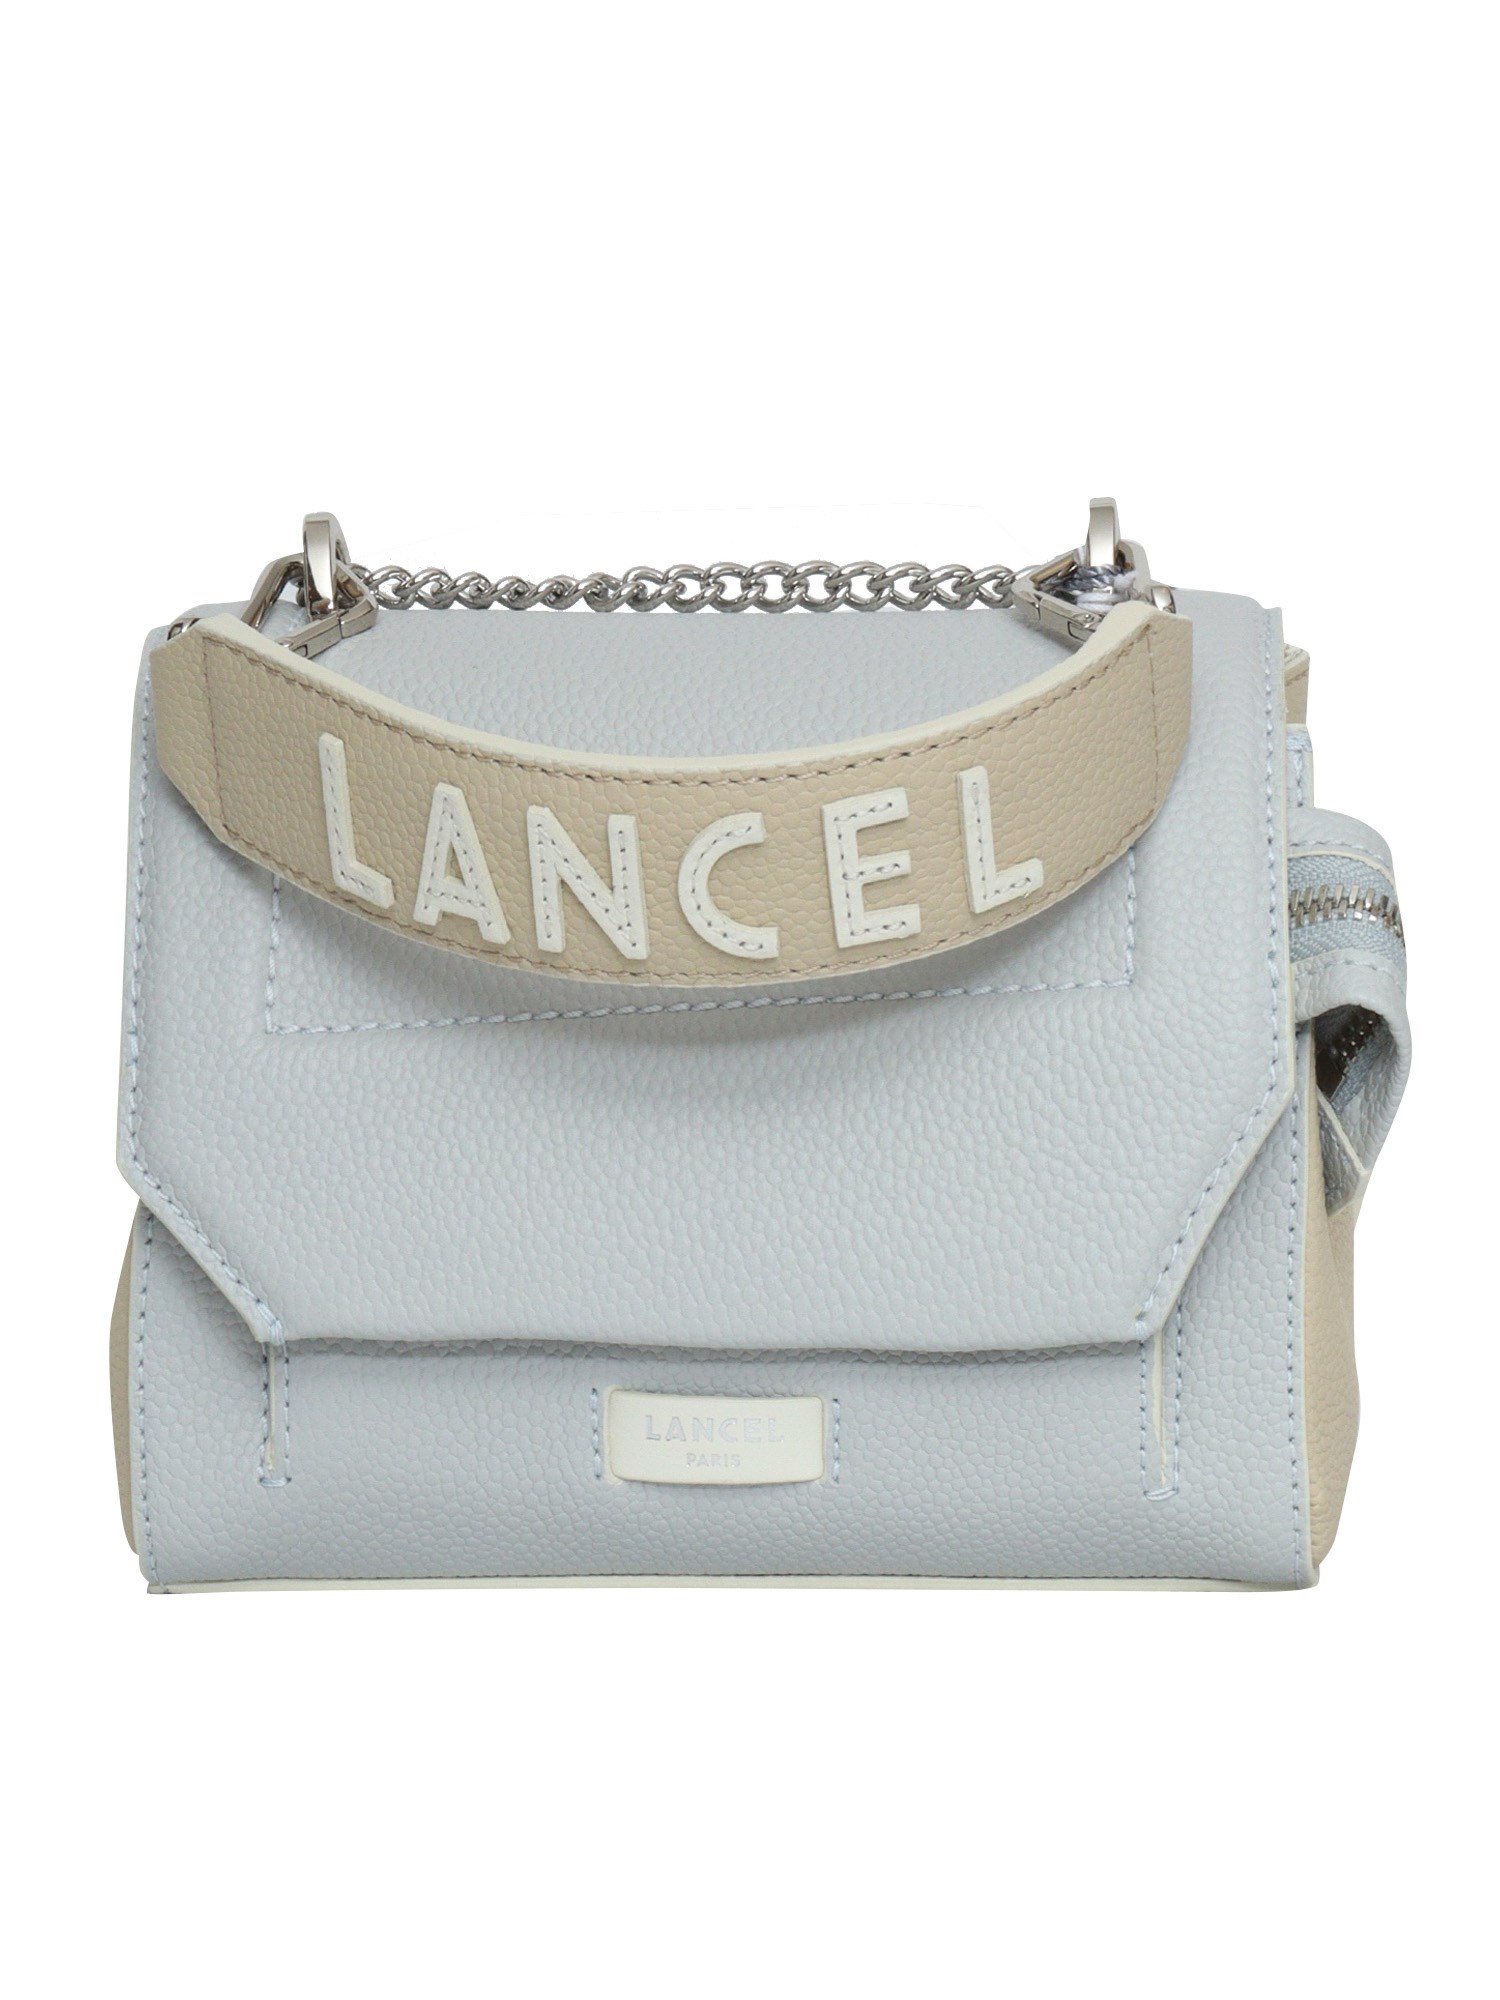 Lancel Two-tone Rabat Bag In White